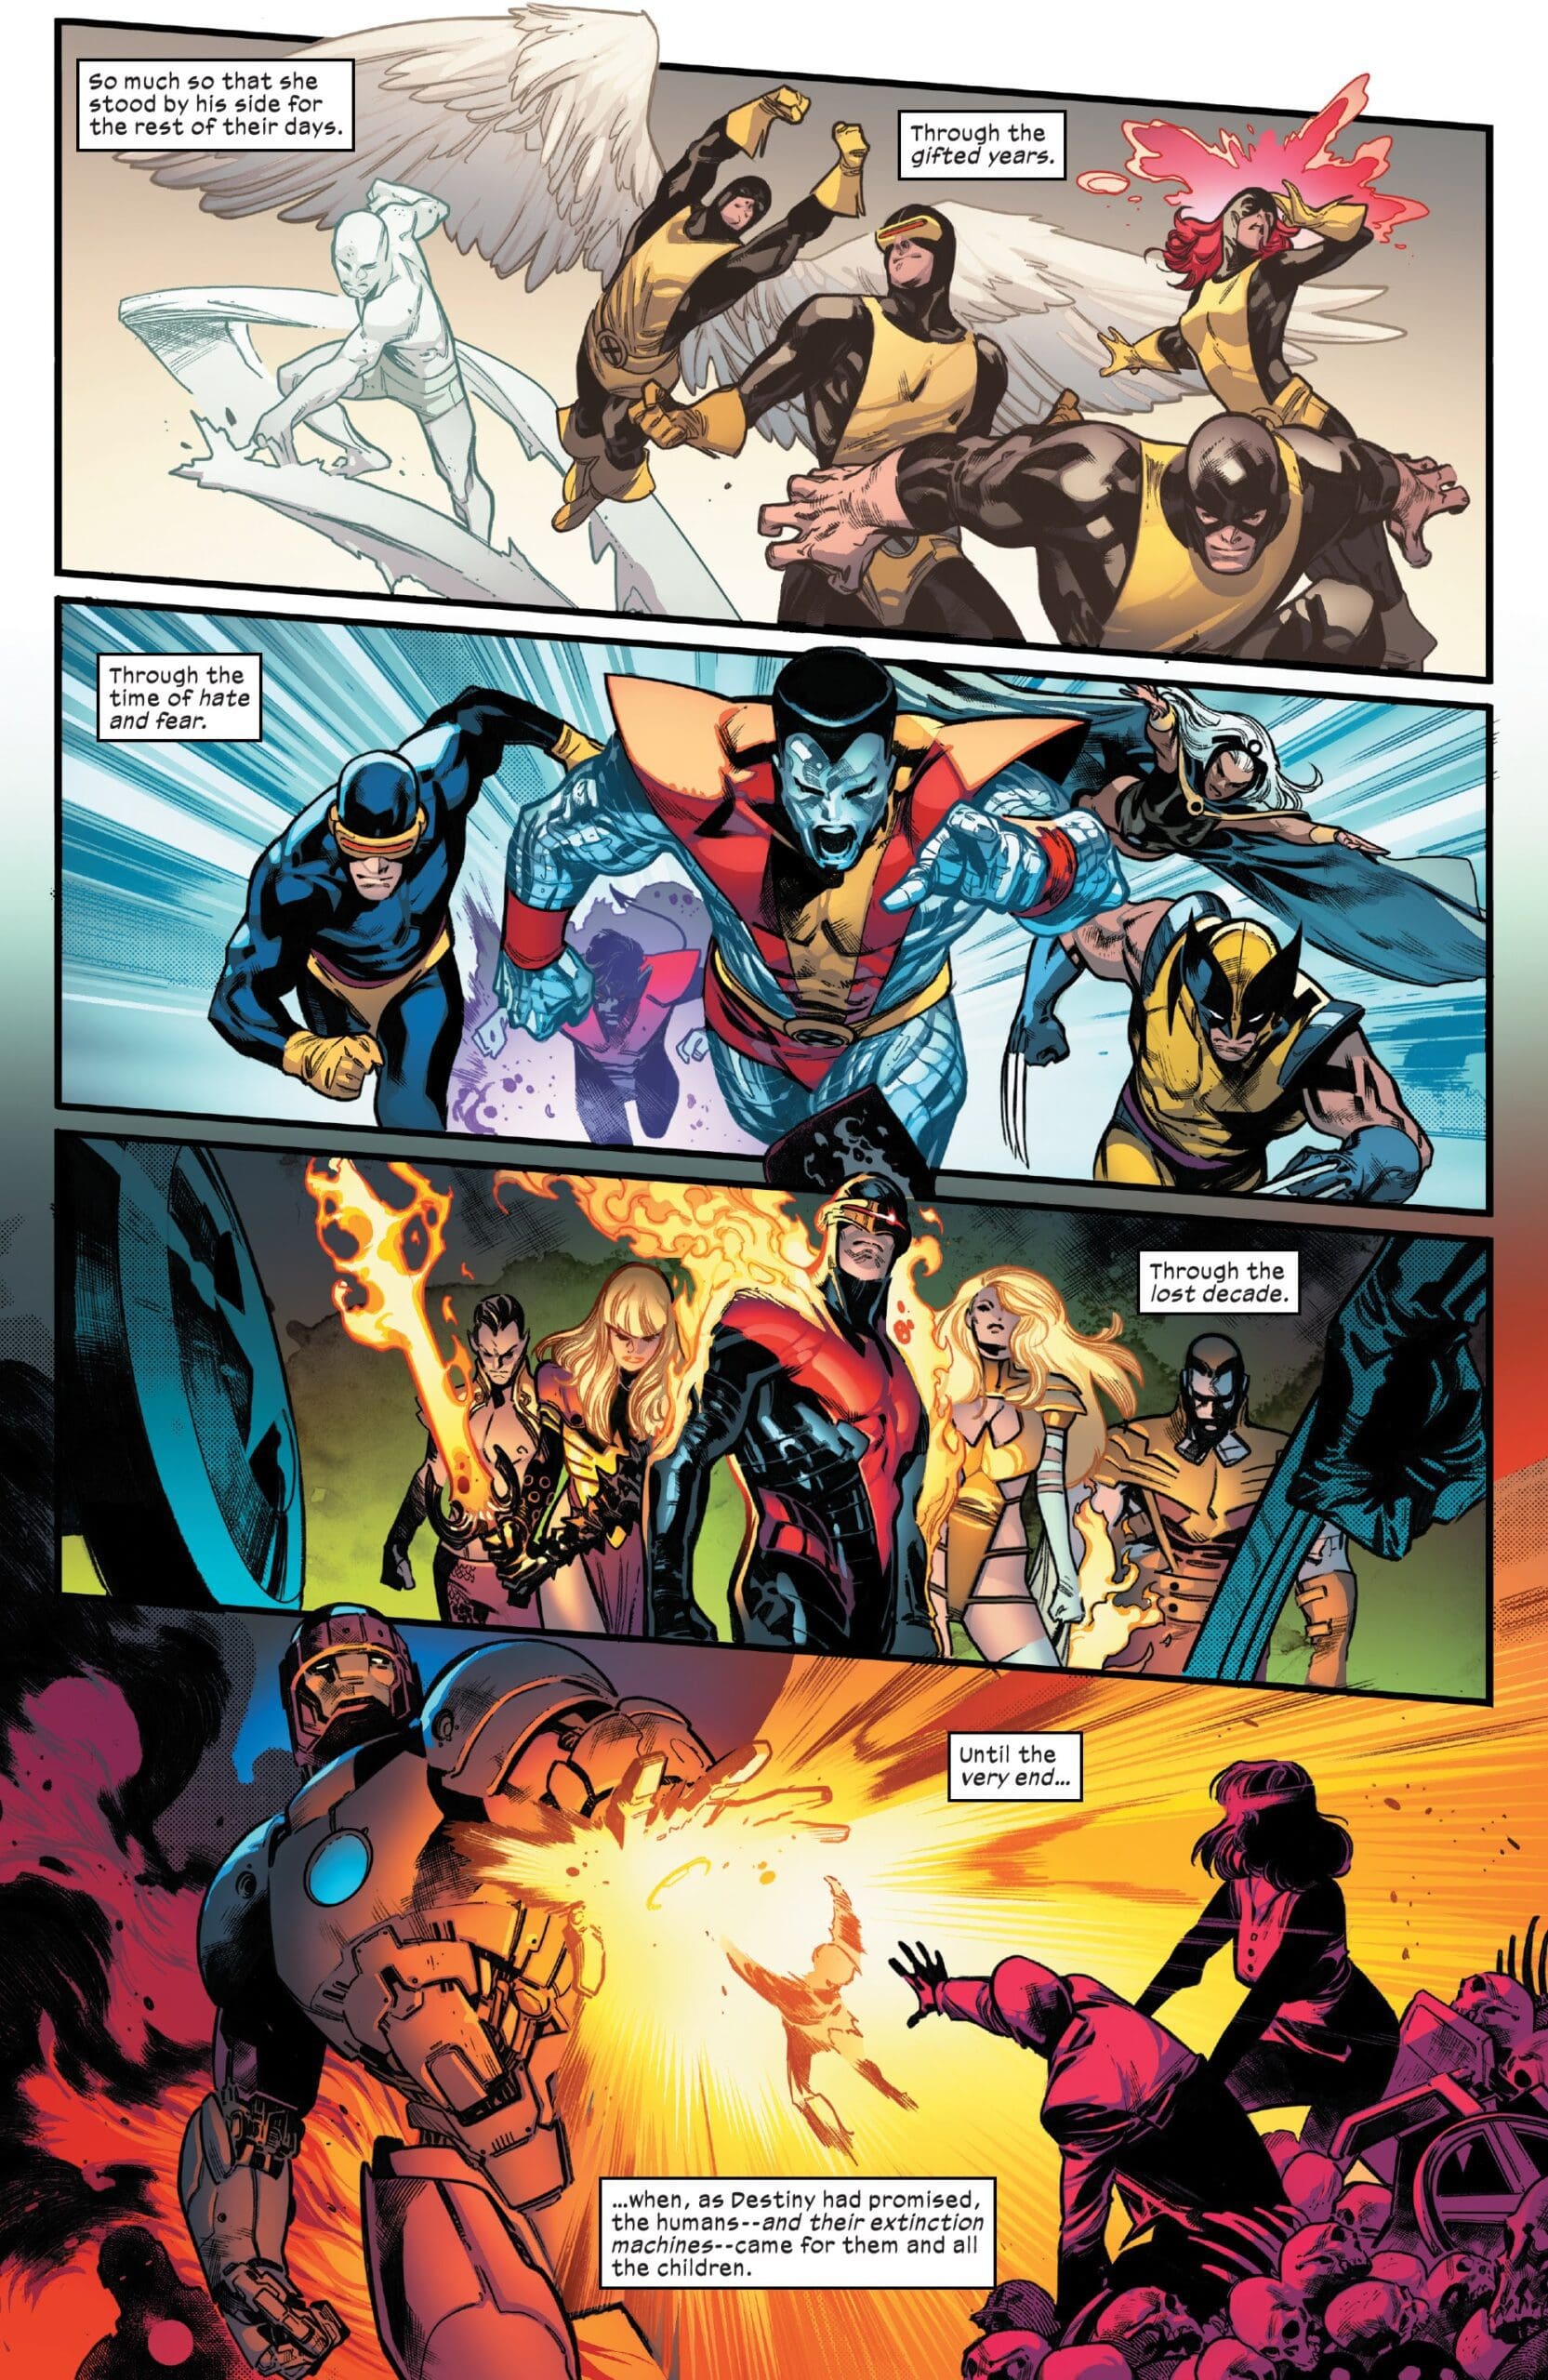 Marvel - House of X e Powers of X portano la rivoluzione 1